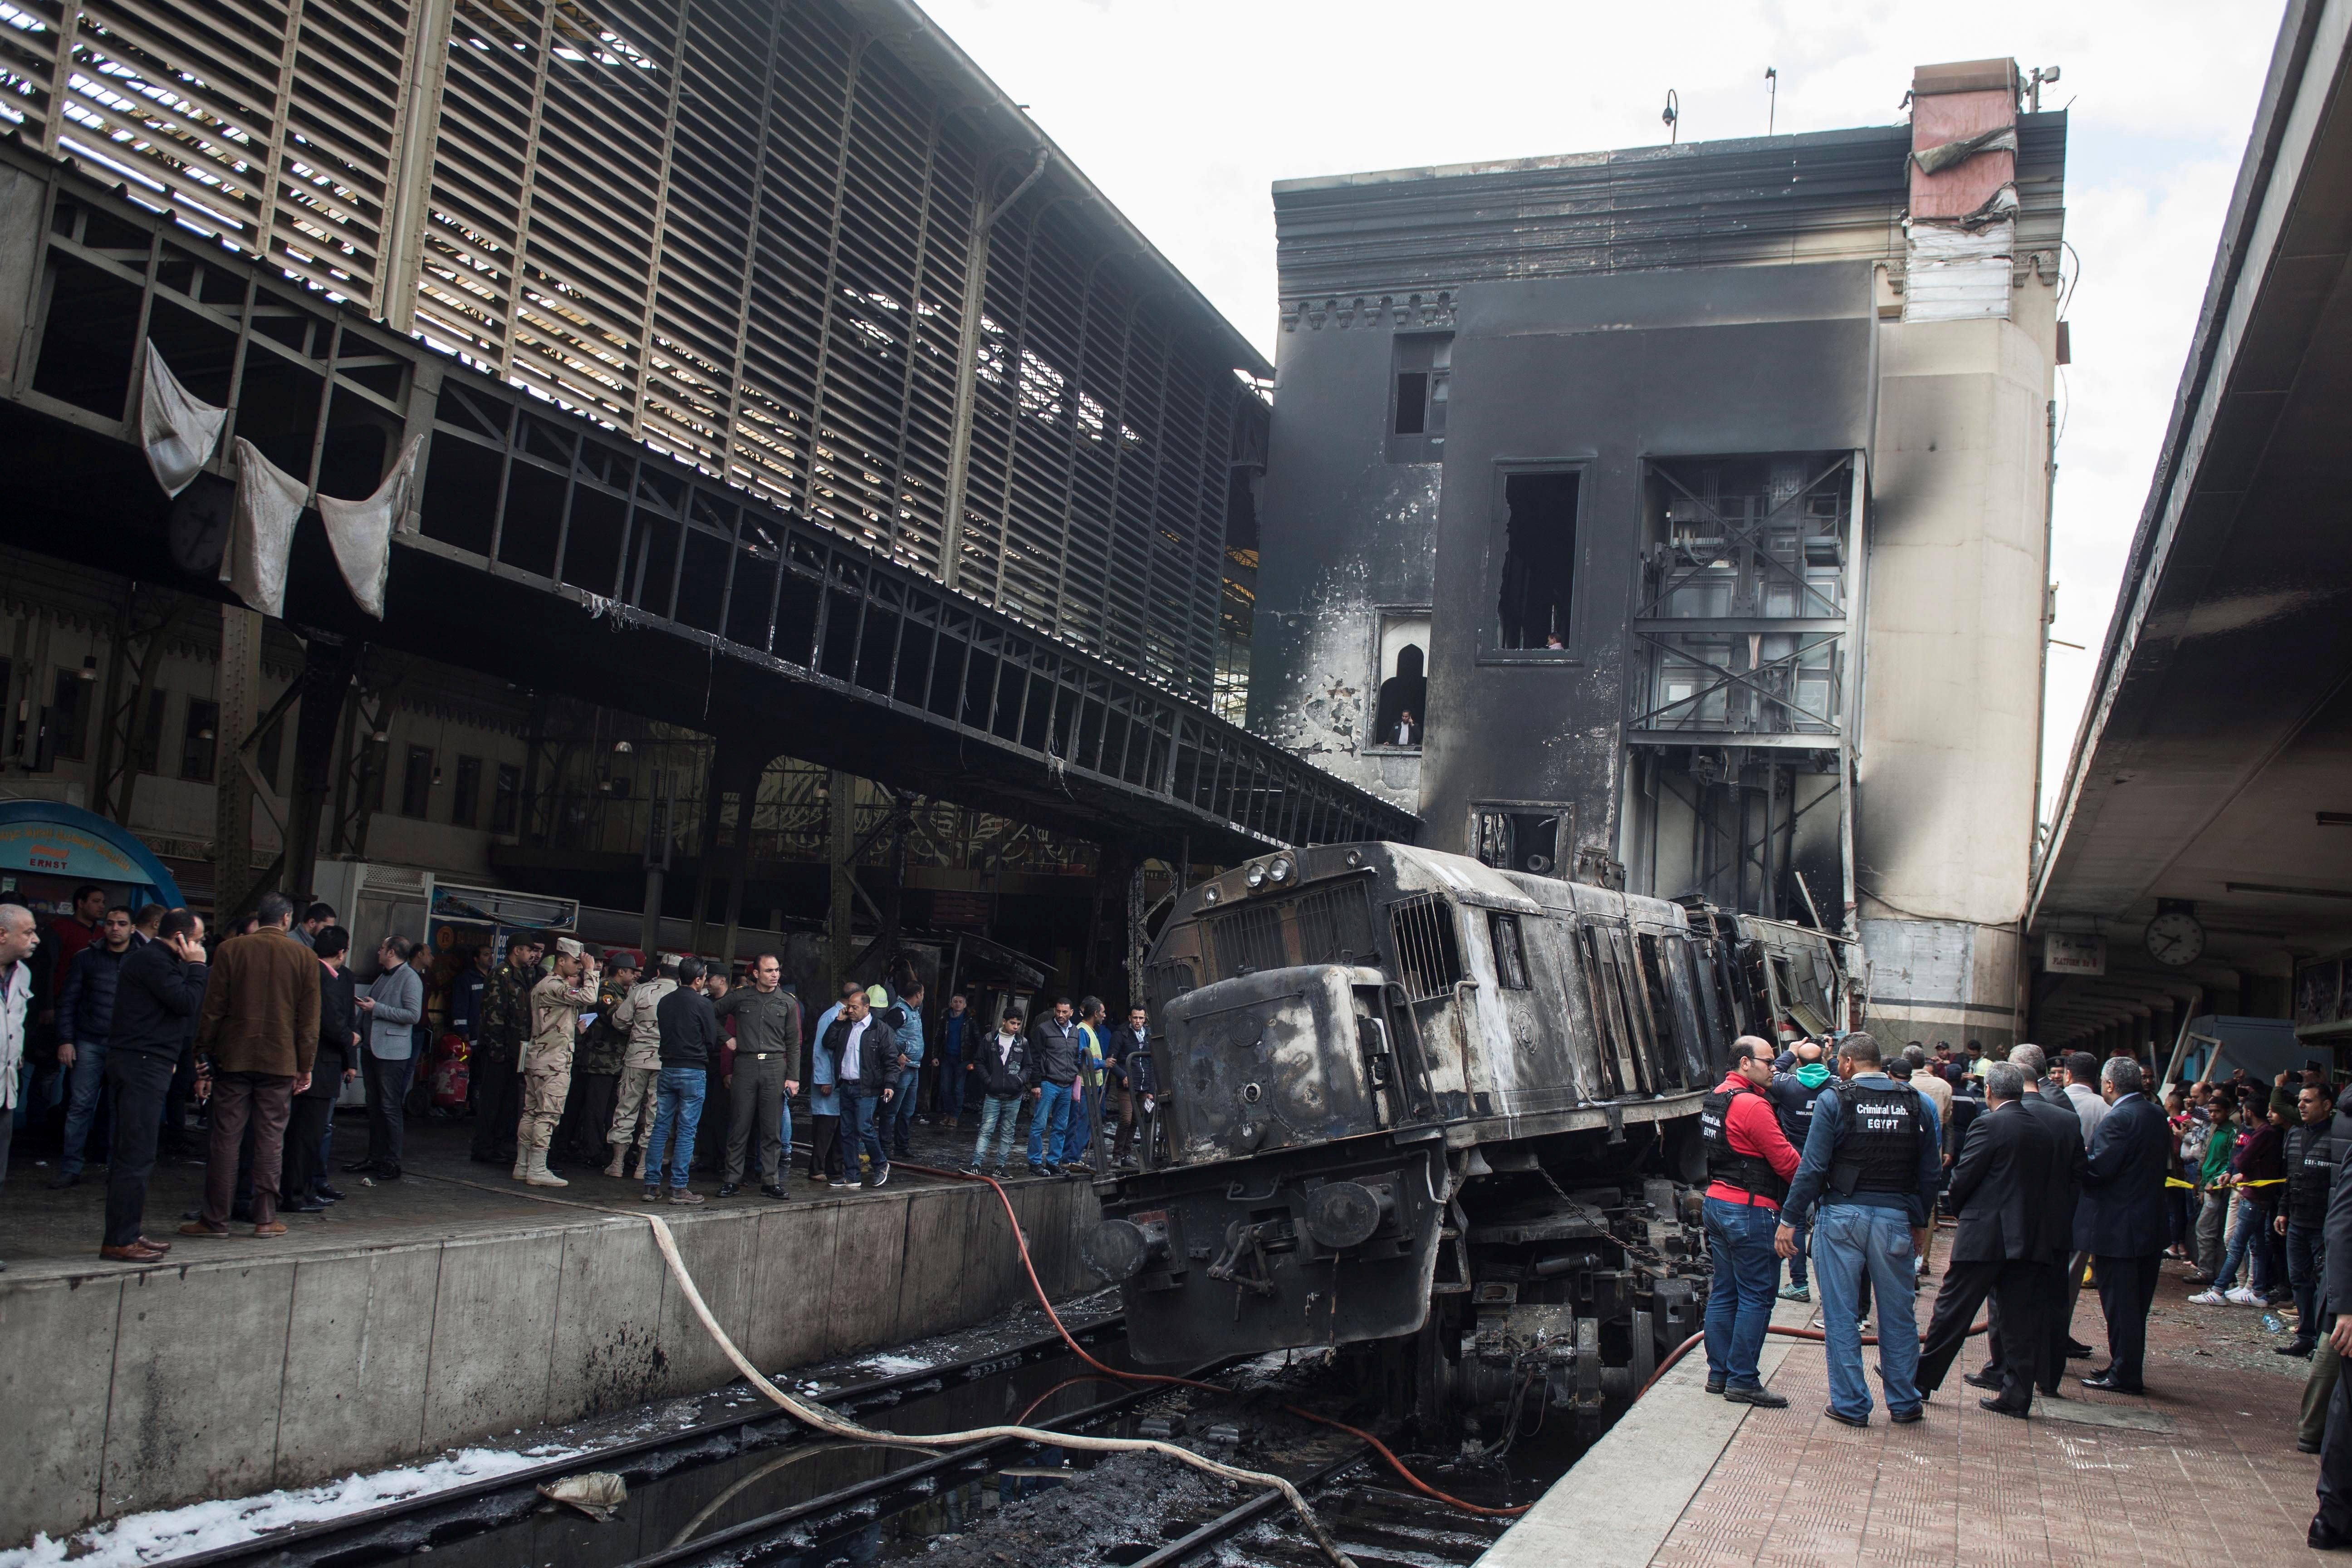 Tragedia en El Cairo: un accidente ferroviario provoca al menos 20 muertos y 40 heridos